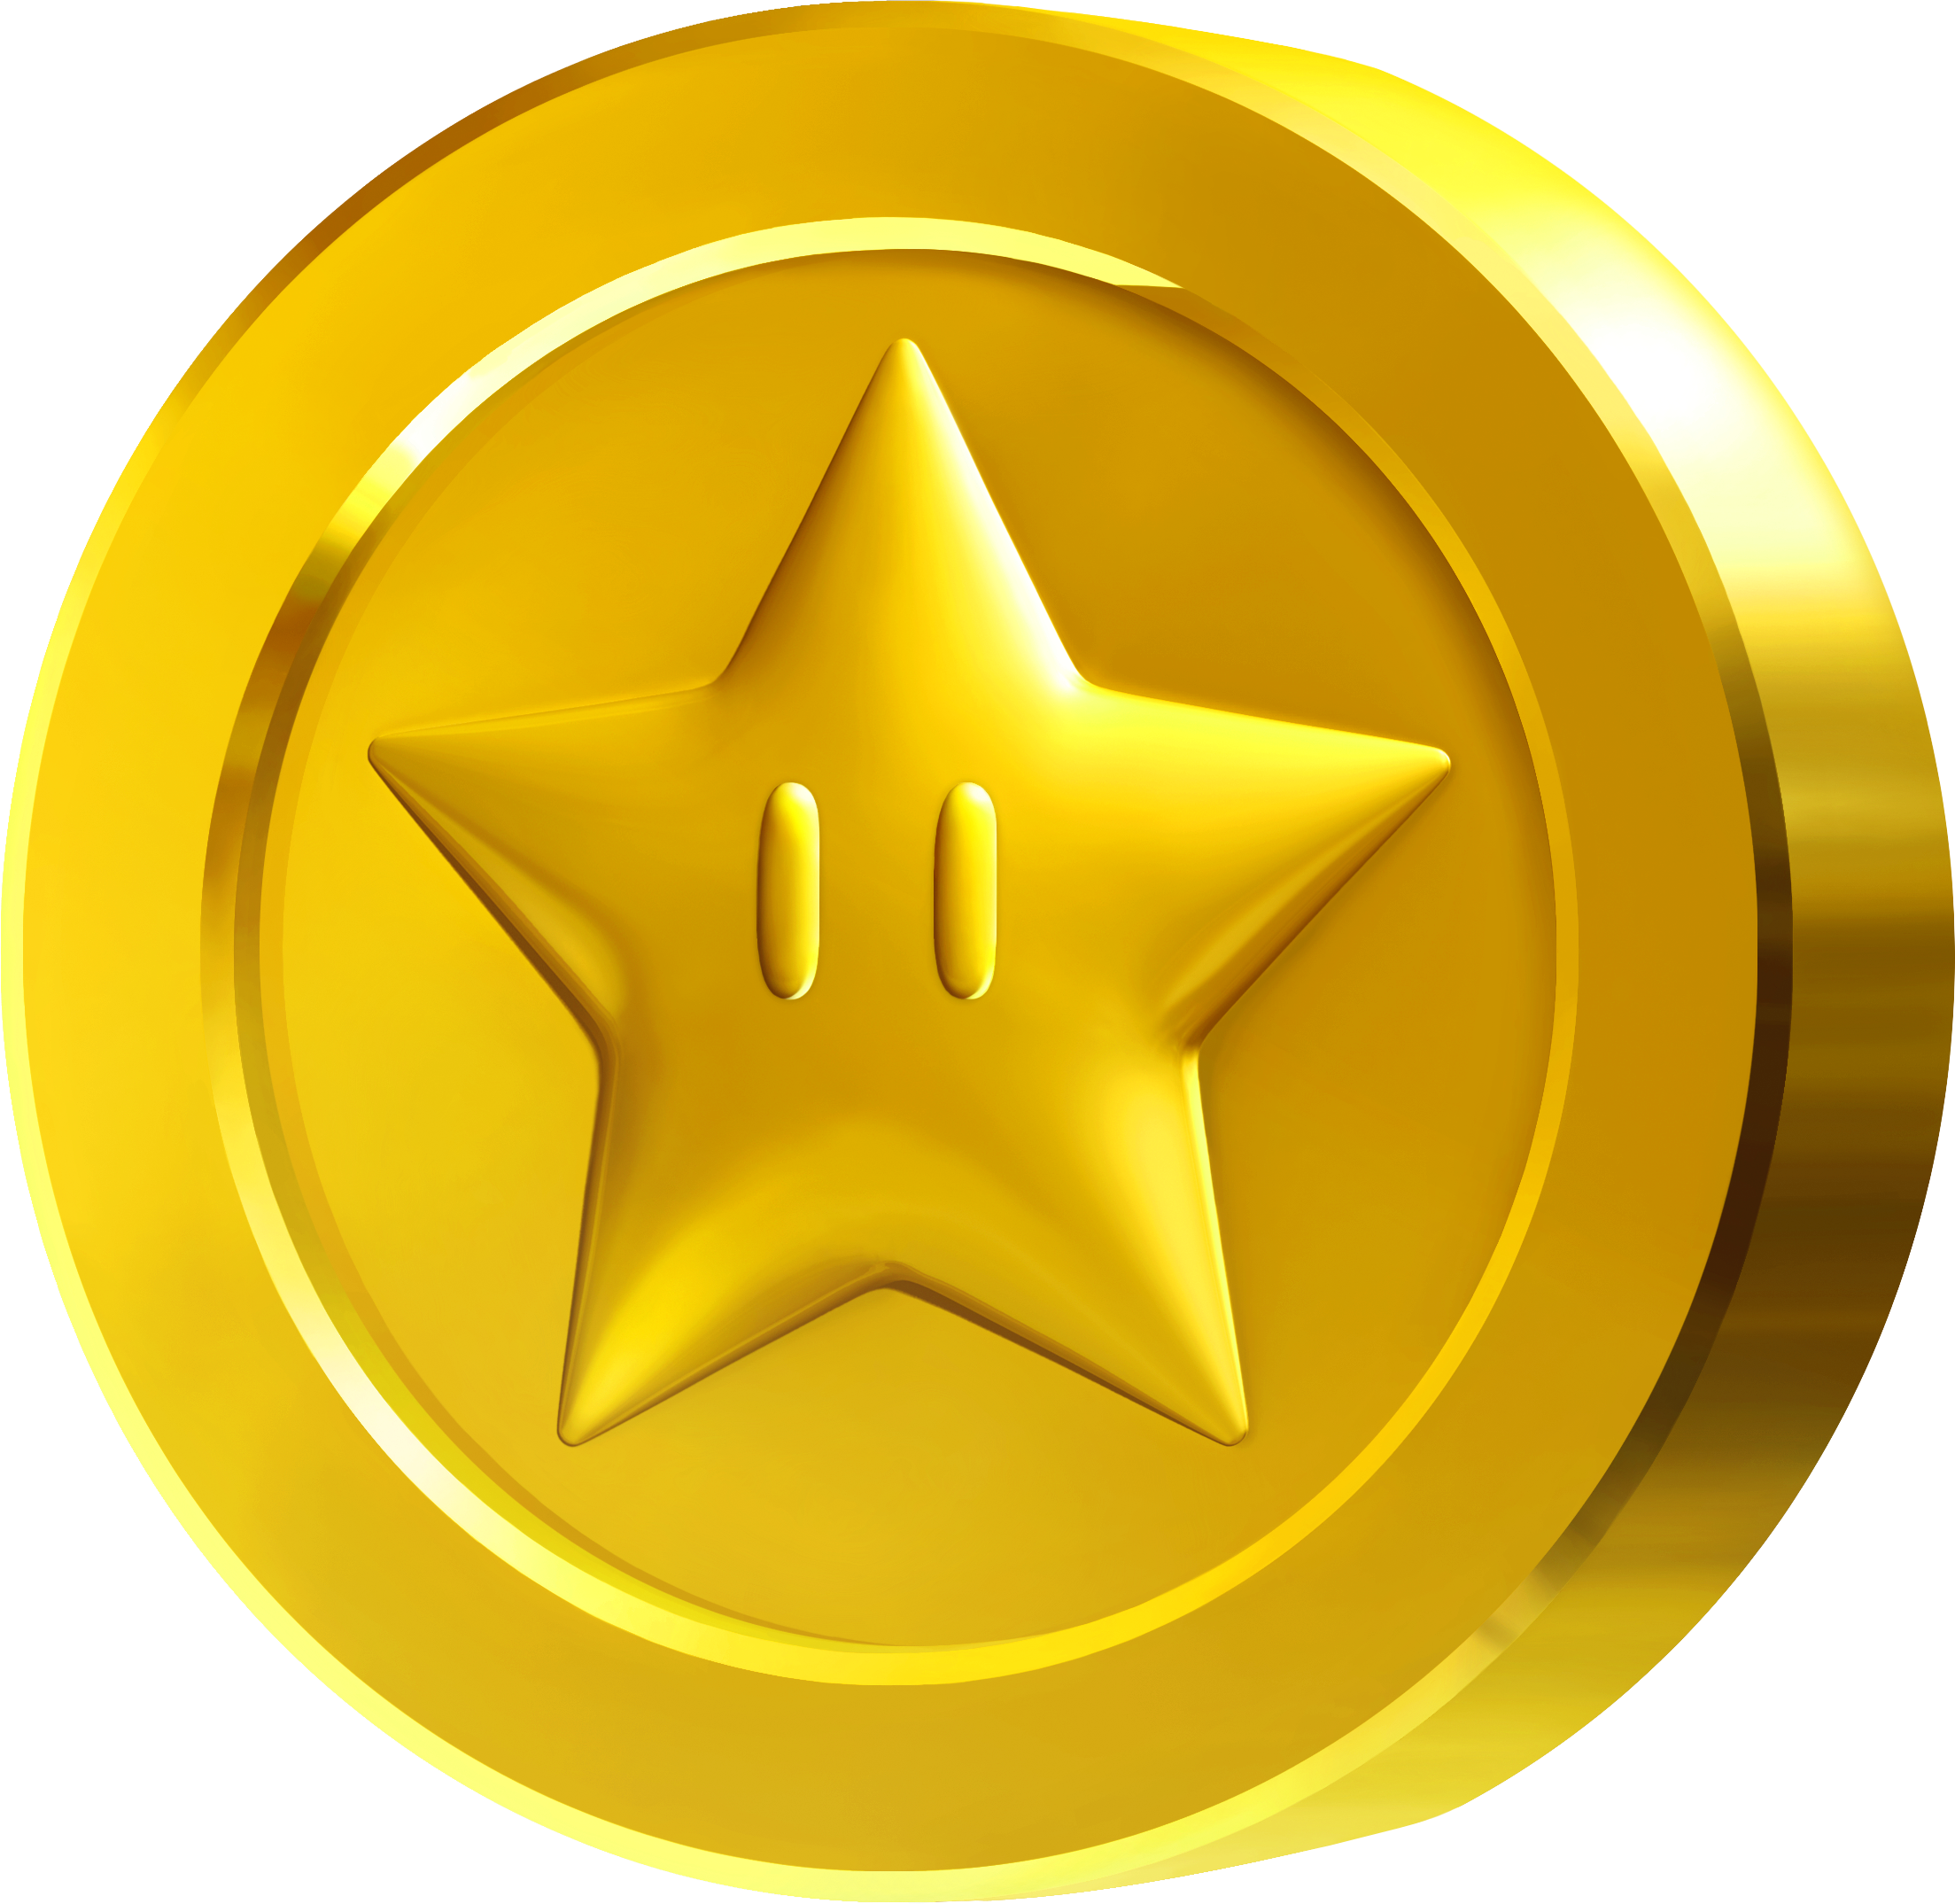 Super Mario Star Coins Clipart Free - Mario Star Coin (2207x2149)